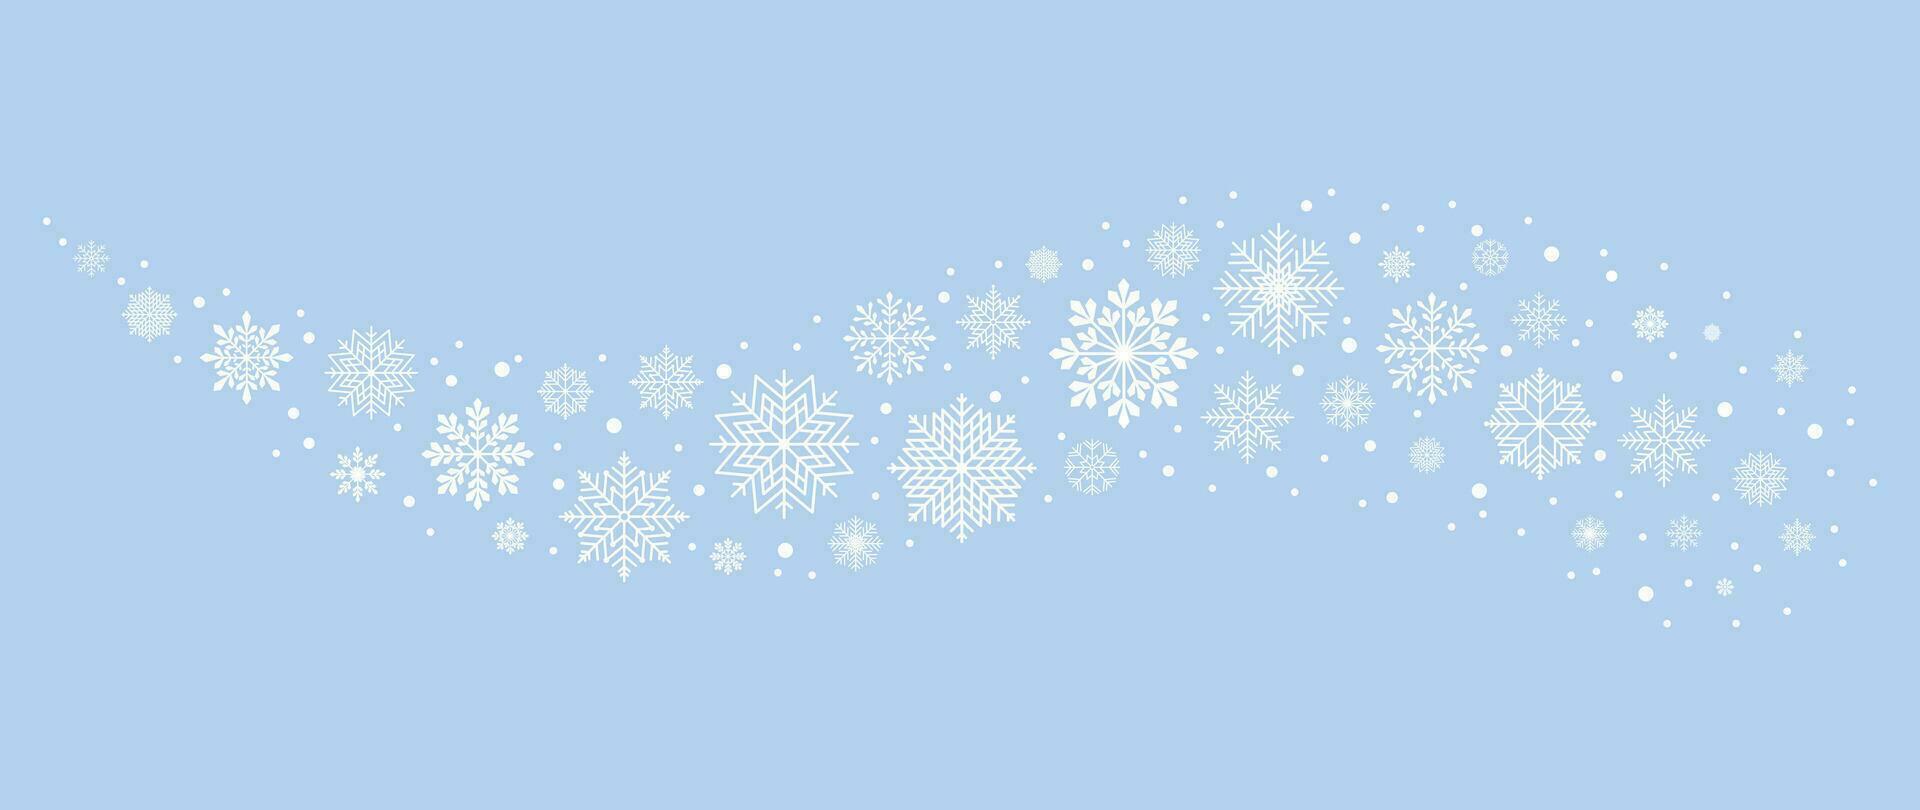 inverno sfondo con i fiocchi di neve e neve. vettore illustrazione.